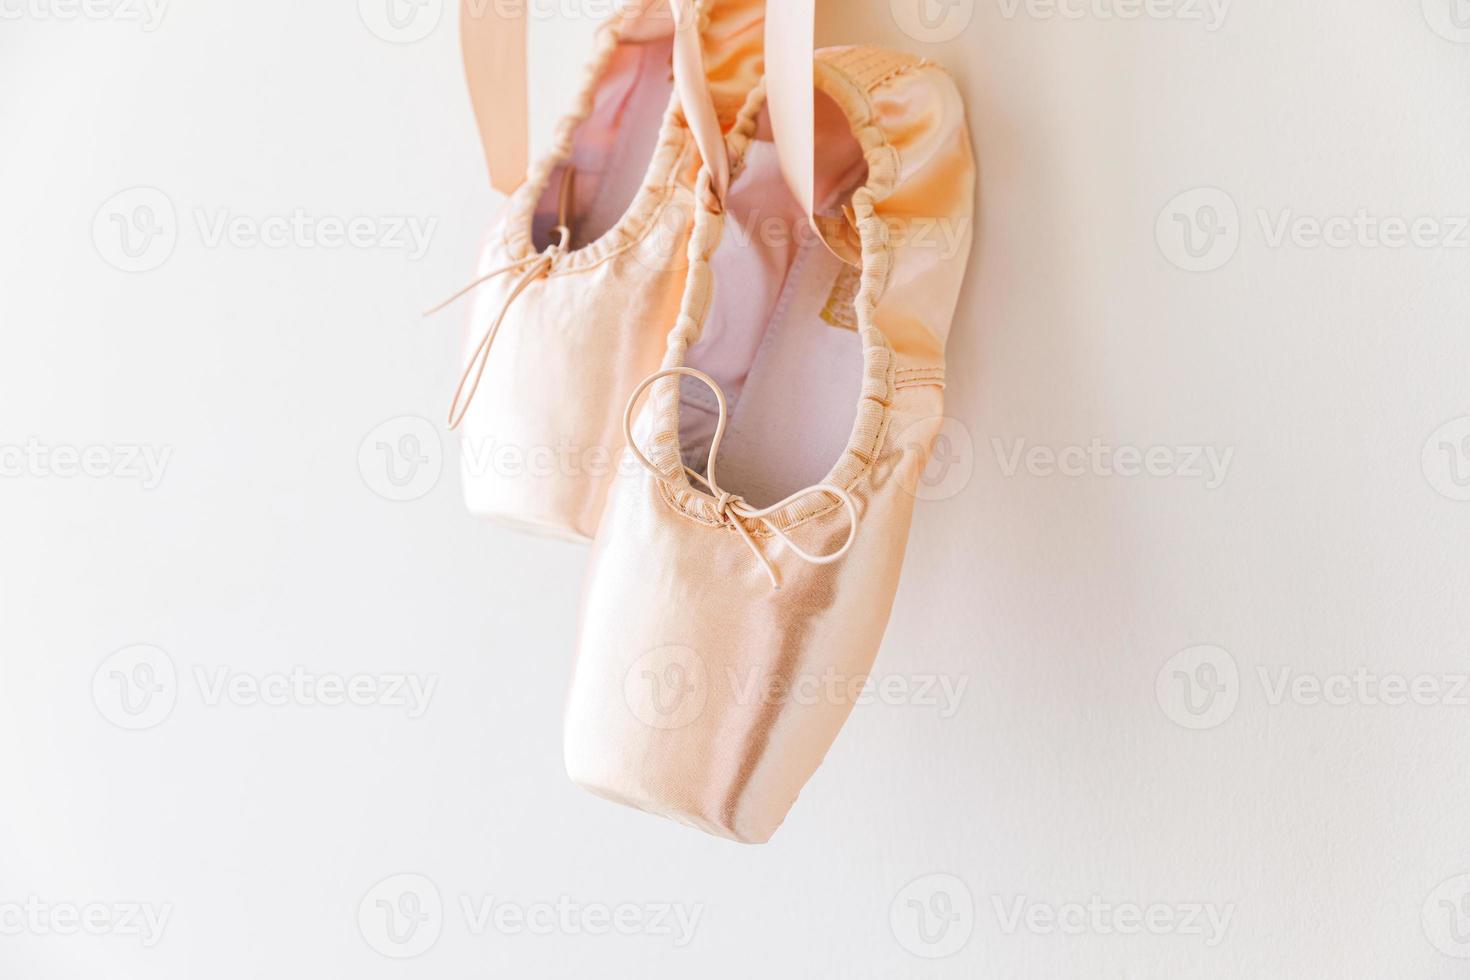 nouvelles chaussures de ballet beige pastel avec ruban de satin isolé sur fond blanc. ballerines pointes classiques pour l'entraînement de danse. concept d'école de ballet, espace de copie photo